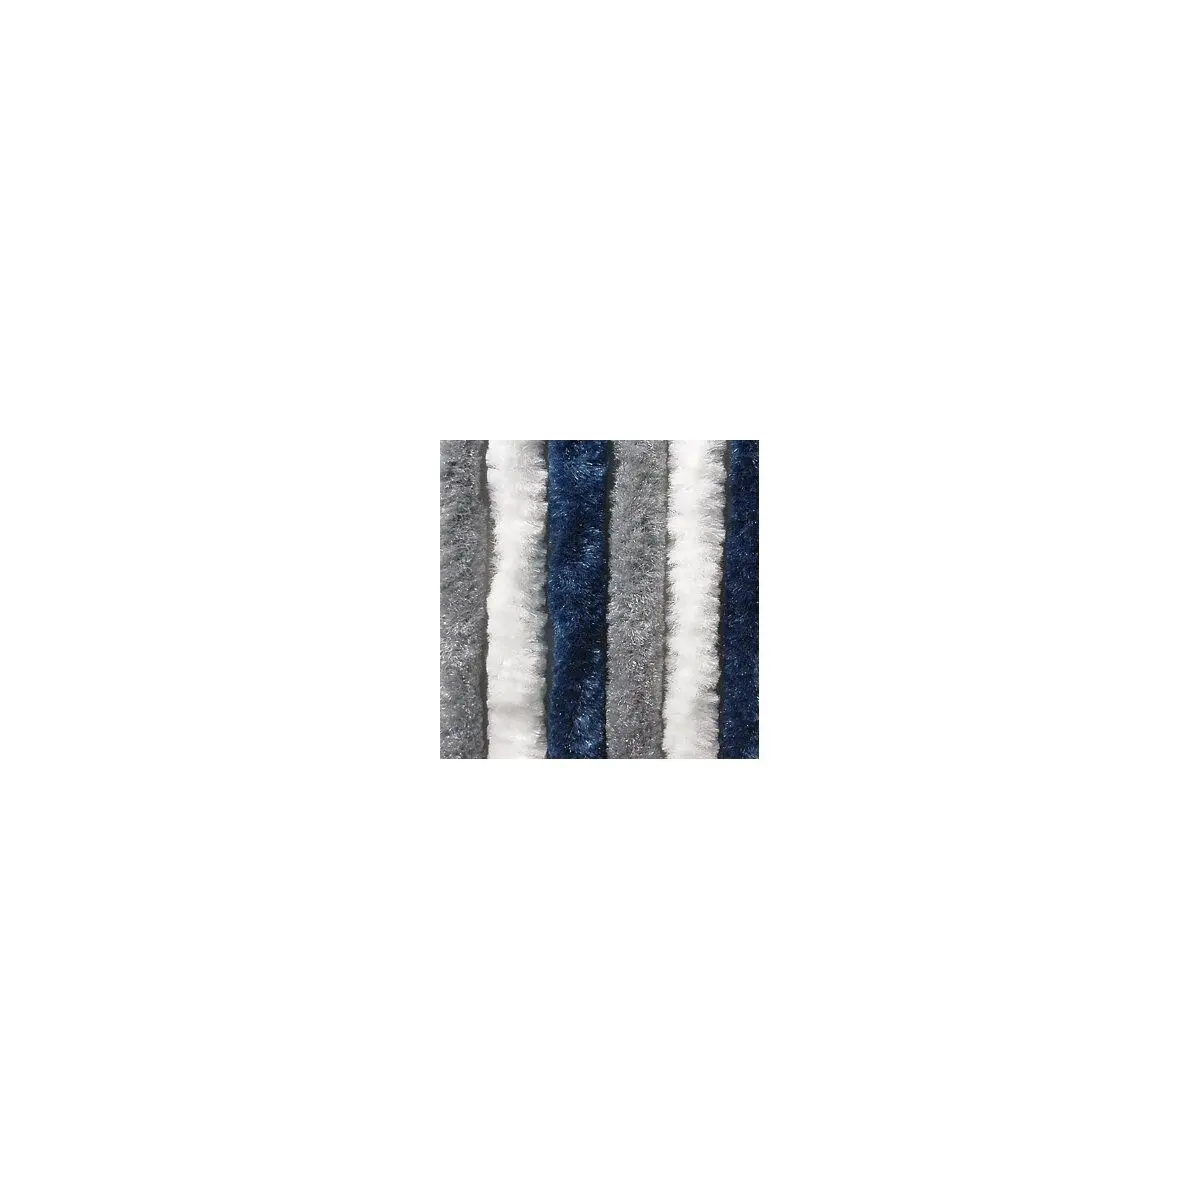 Šenilový flísový stan/balkón - 100 x 205 cm, tmavomodrý/biely/šedý